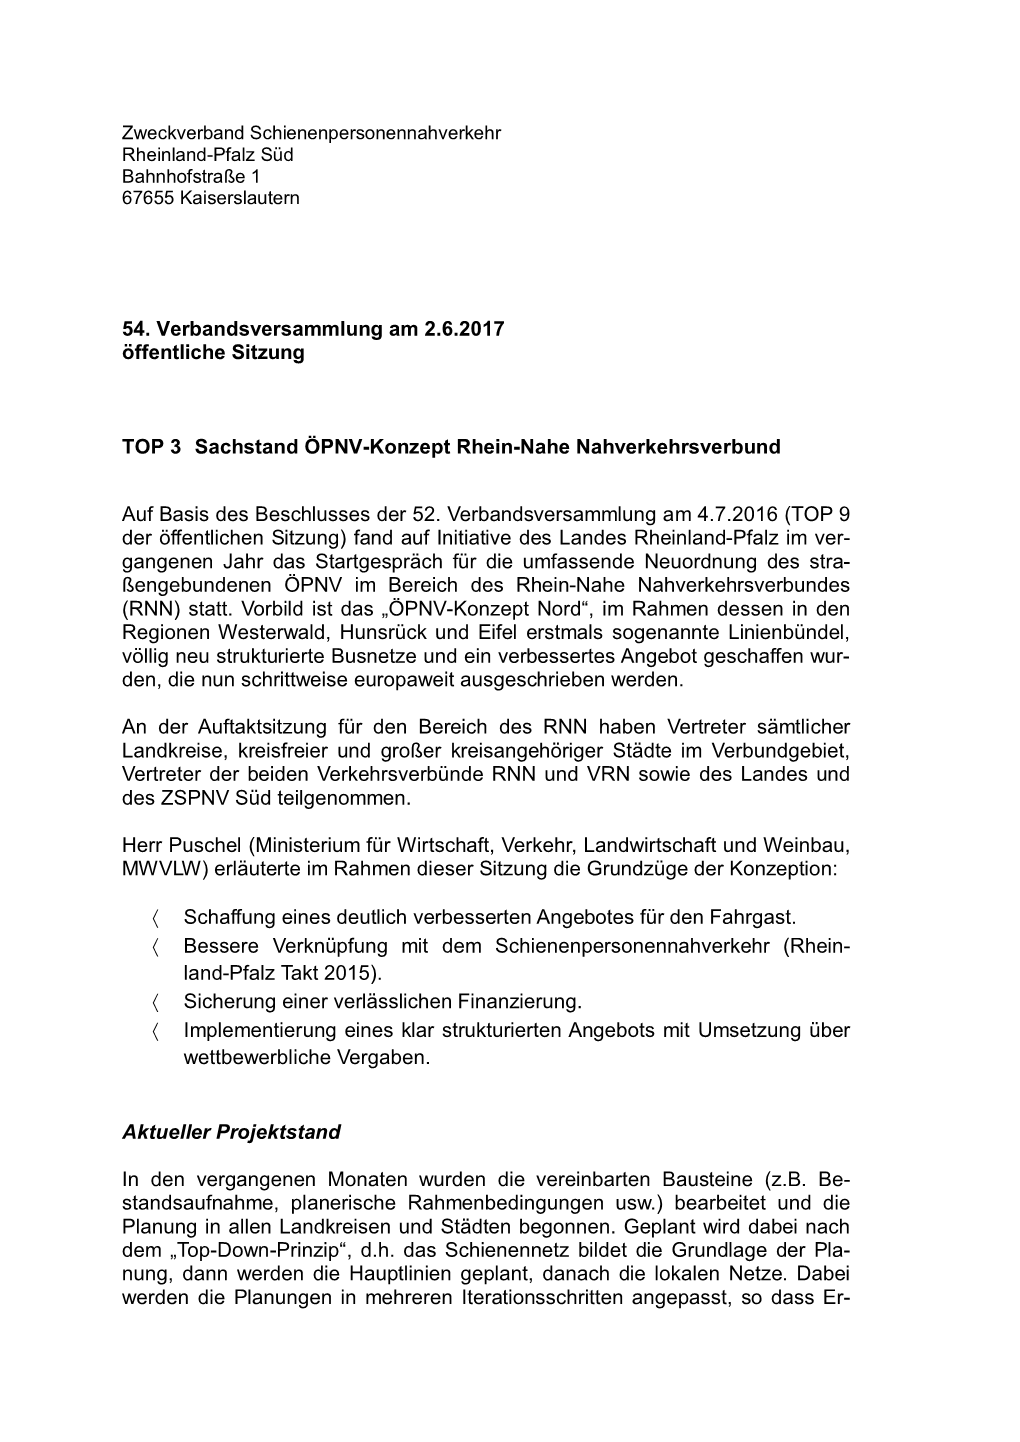 Sachstand ÖPNV-Konzept Rhein-Nahe Nahverkehrsverbund